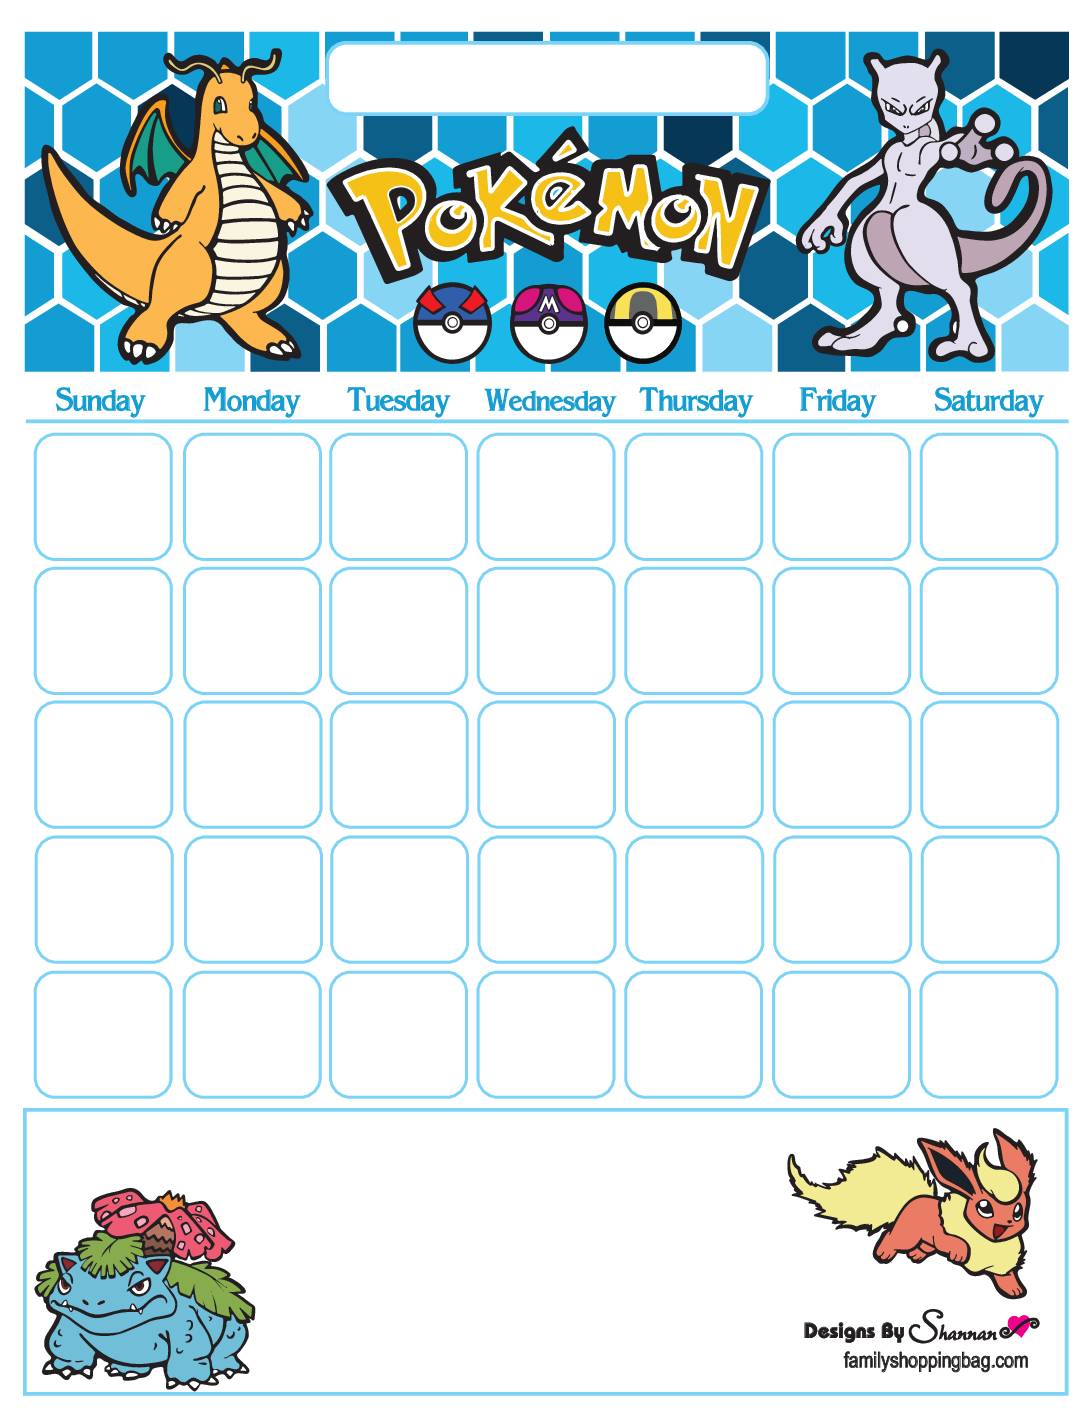 pokemon-calendar